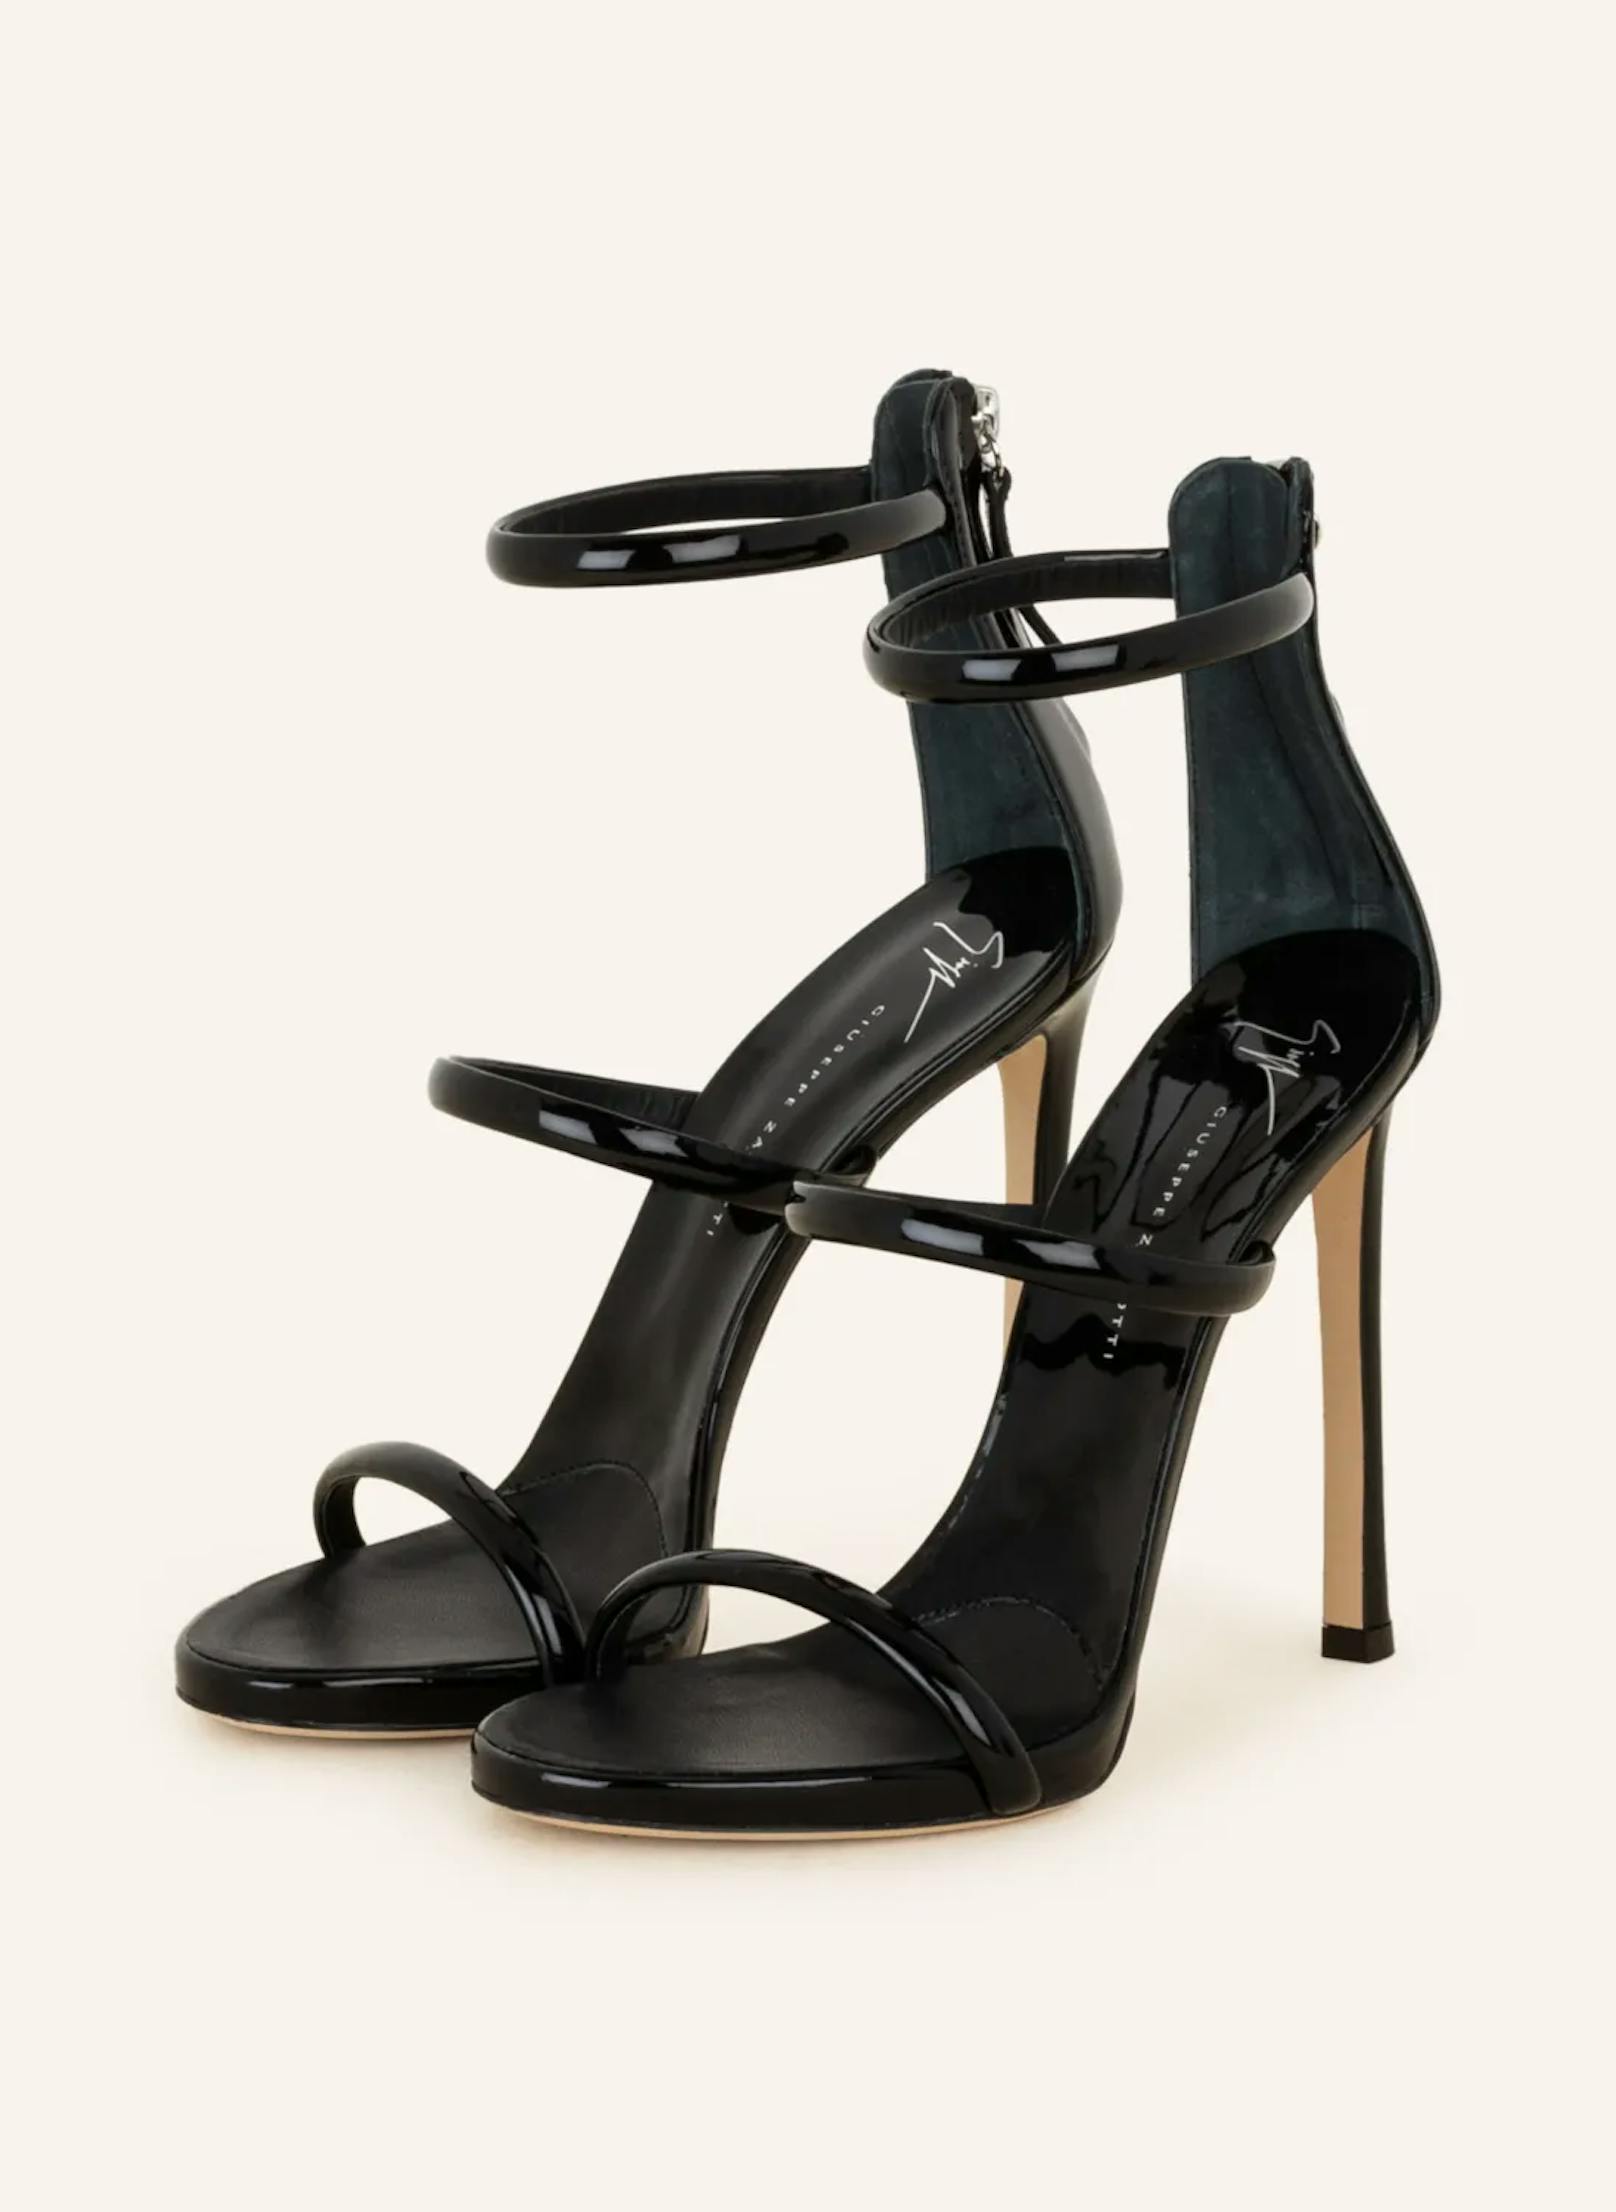 Der italienische Schuh-Designer Giuseppe Zanotti ist ebenfalls für seine luxuriösen und aufwendig verzierten Schuhkreationen bekannt. Internationale Stars wie etwa Bella Hadid sind besonders große Fans des Luxusdesigners.  